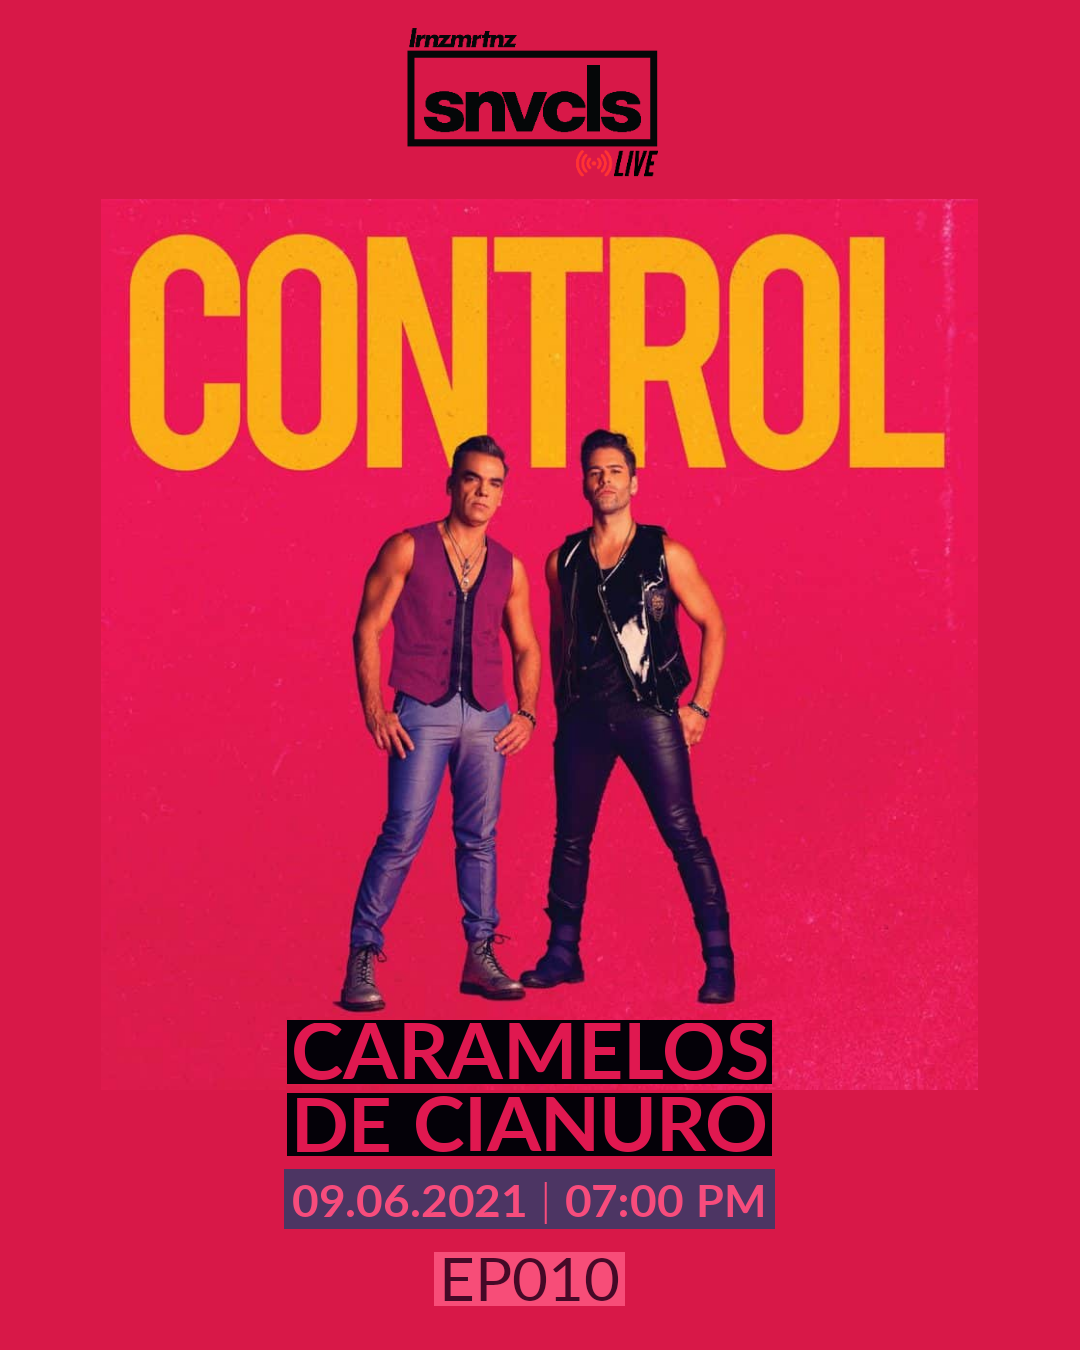 [snvcls: live] EP010 | Caramelos De Cianuro